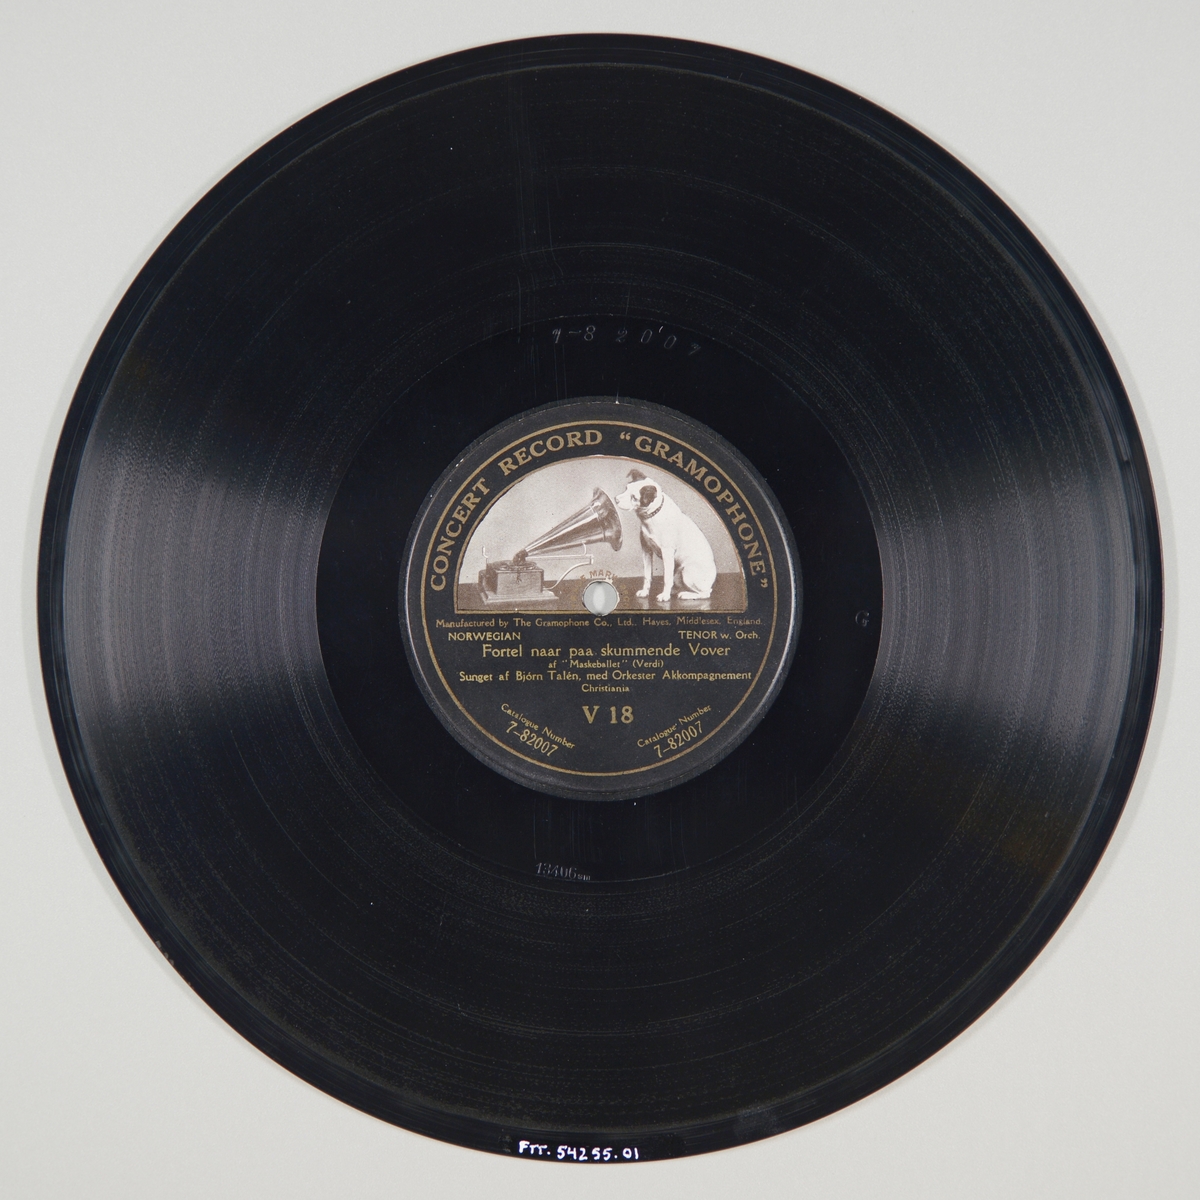 FTT.54255.01:
Svart grammofonplate laget av bakelitt og skjellak. Etiketten er svart med skrift i gull, for tekst se "Påført tekst/merker". På etiketten er det en hund som sitter og lytter til en grammofon. Trykket er i svart, grått og hvitt. På A-siden er det en sekundær påskrift. 

FTT.54255.02:
Plateomslaget til platen er laget av lysegrønt papir som er limt. Teksten er i mørk grønt, for tekst se "Påført tekst/merker". Omslaget er likt på begge sider.